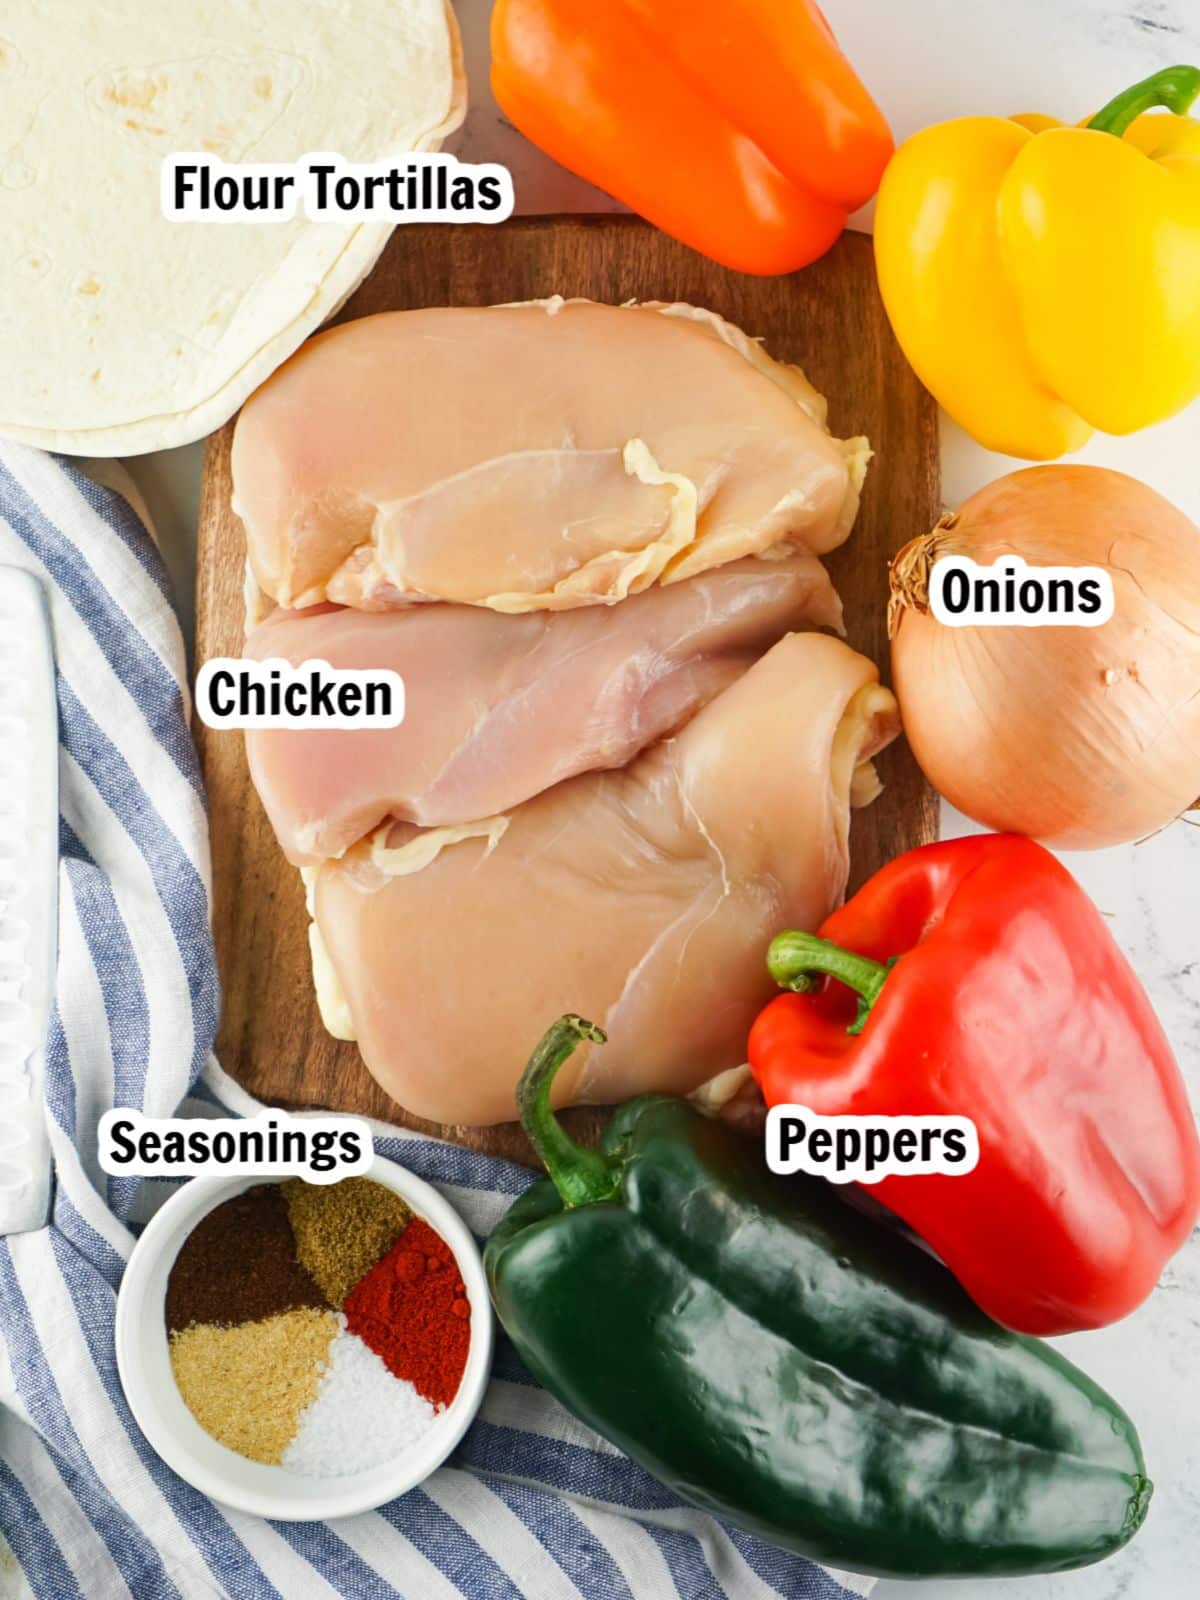 Ingredients - chicken cutlets, peppers, onions, seasonings.